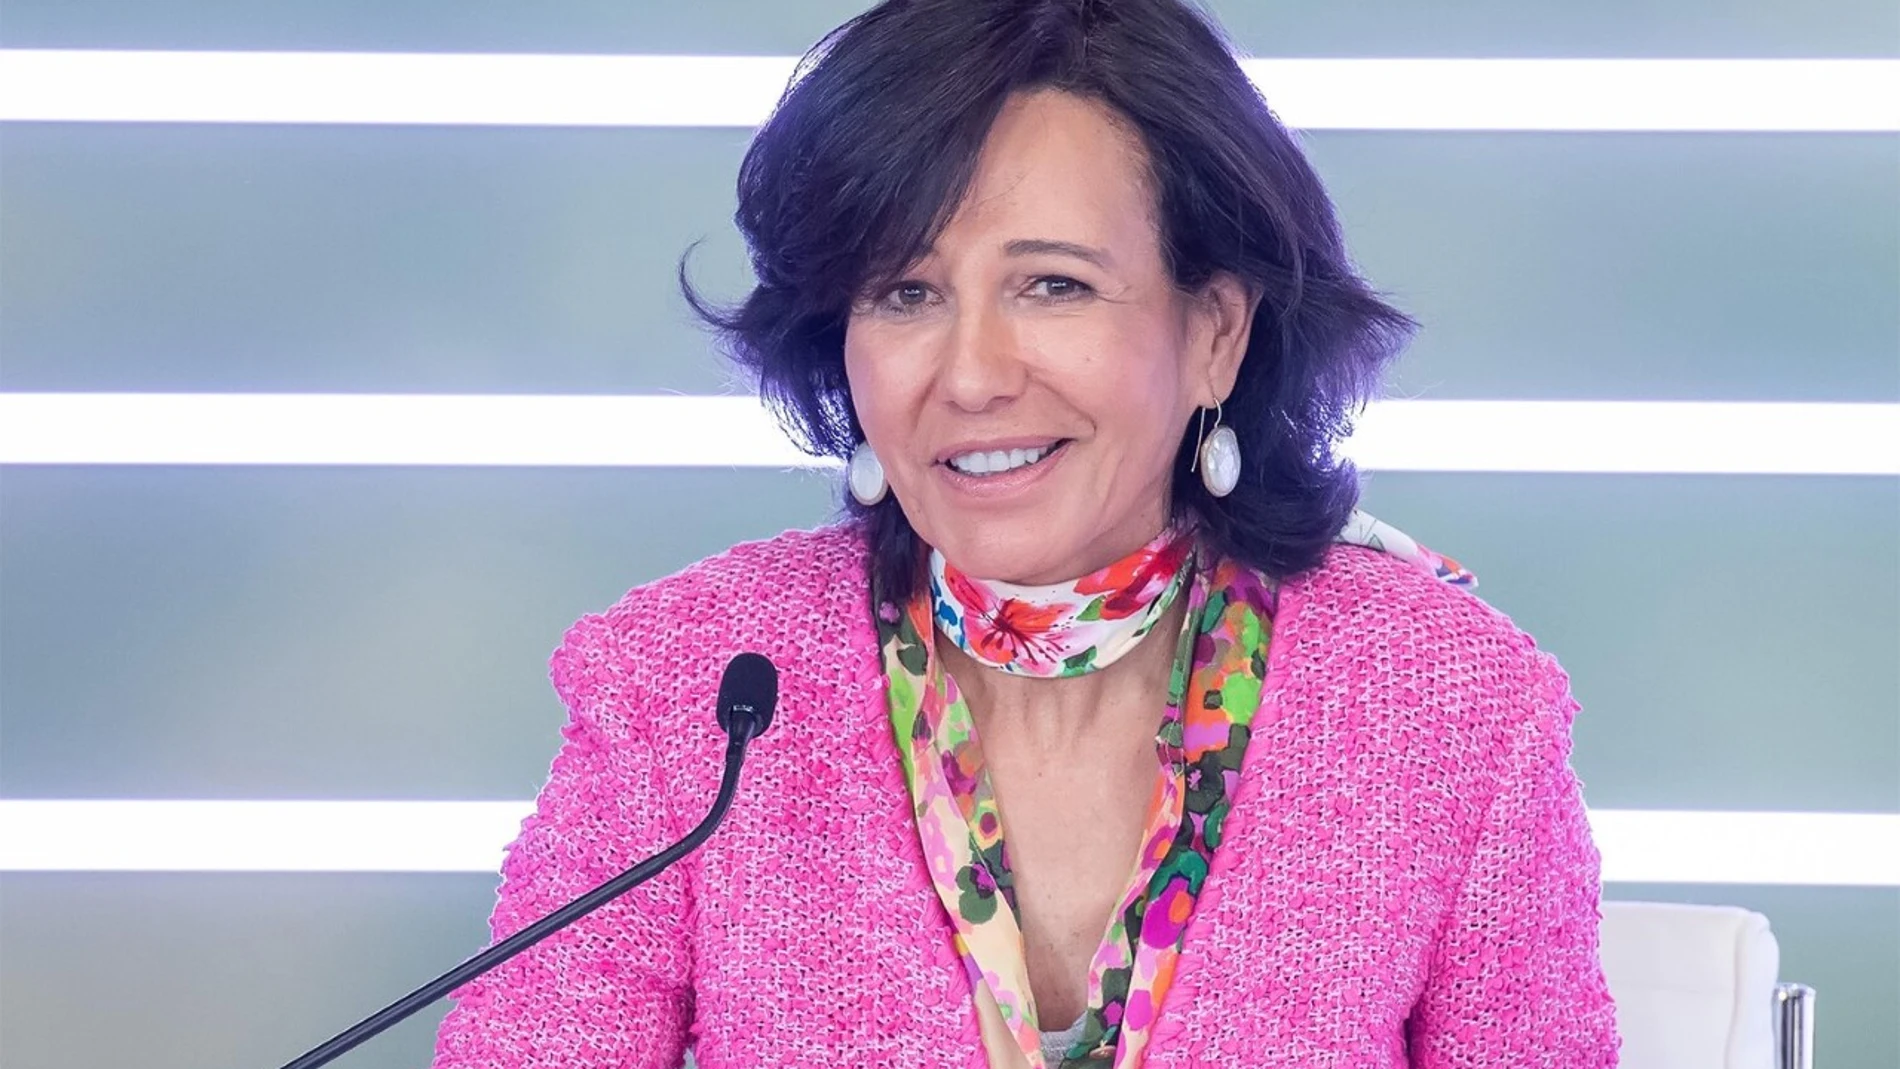 La presidenta de Banco Santander recordó la necesidad de promover las vocaciones científicas